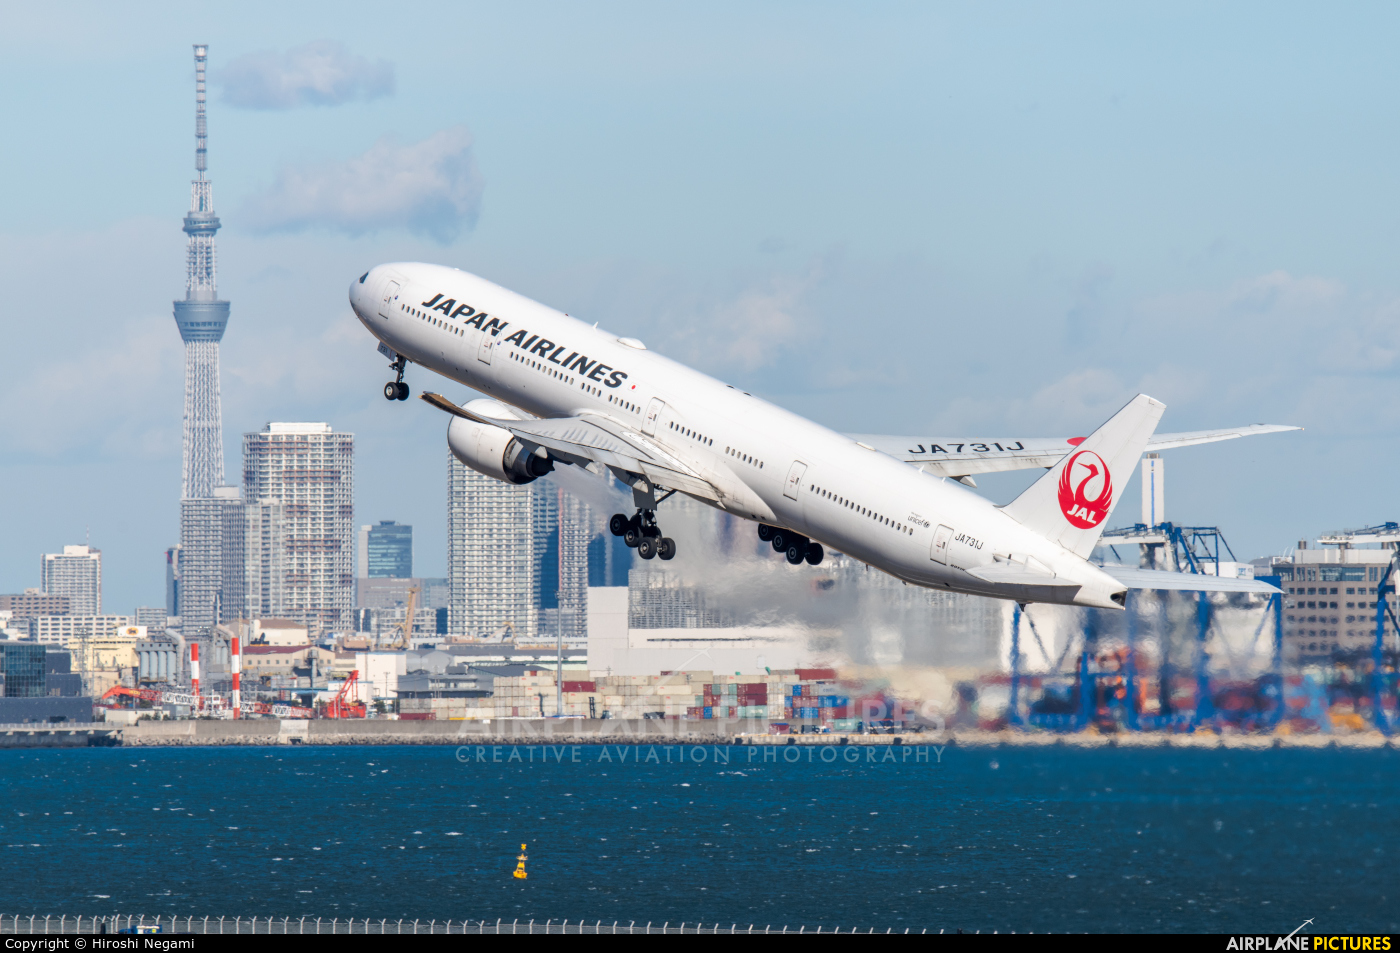 JAL - Japan Airlines JA731J aircraft at Tokyo - Haneda Intl